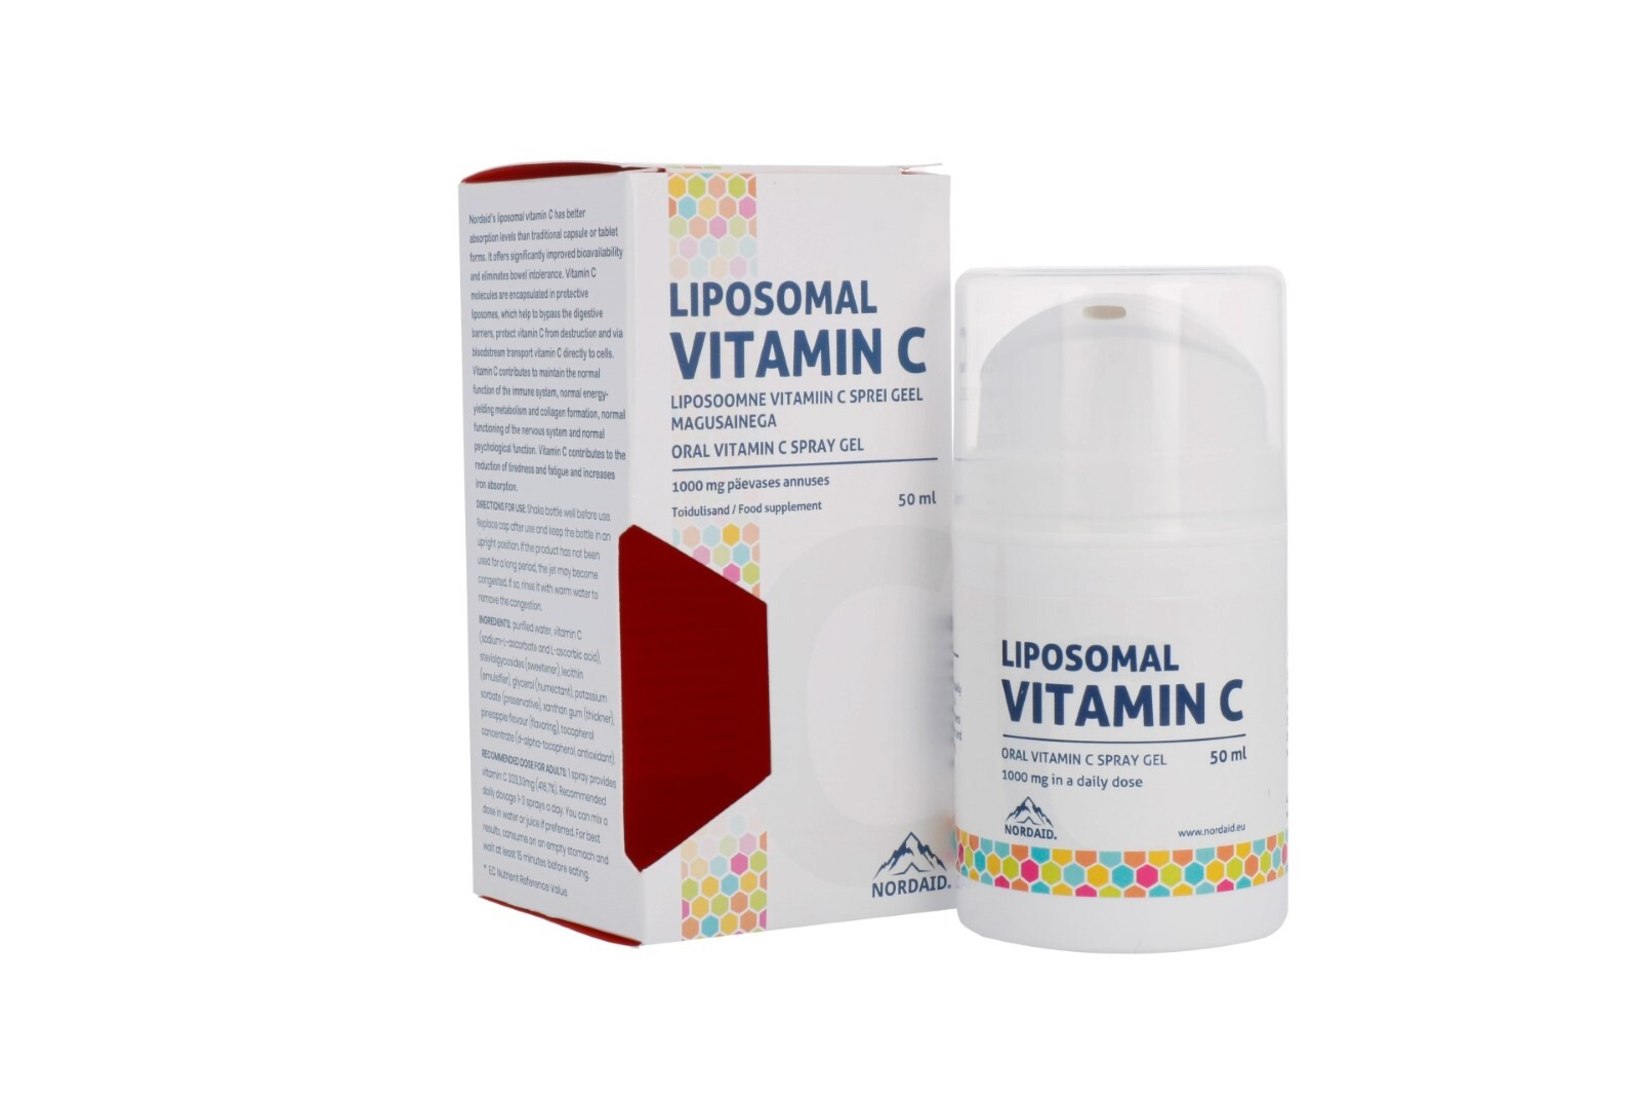 Liposoomne C-vitamiin – tõhus abi viirusetõrjeks!